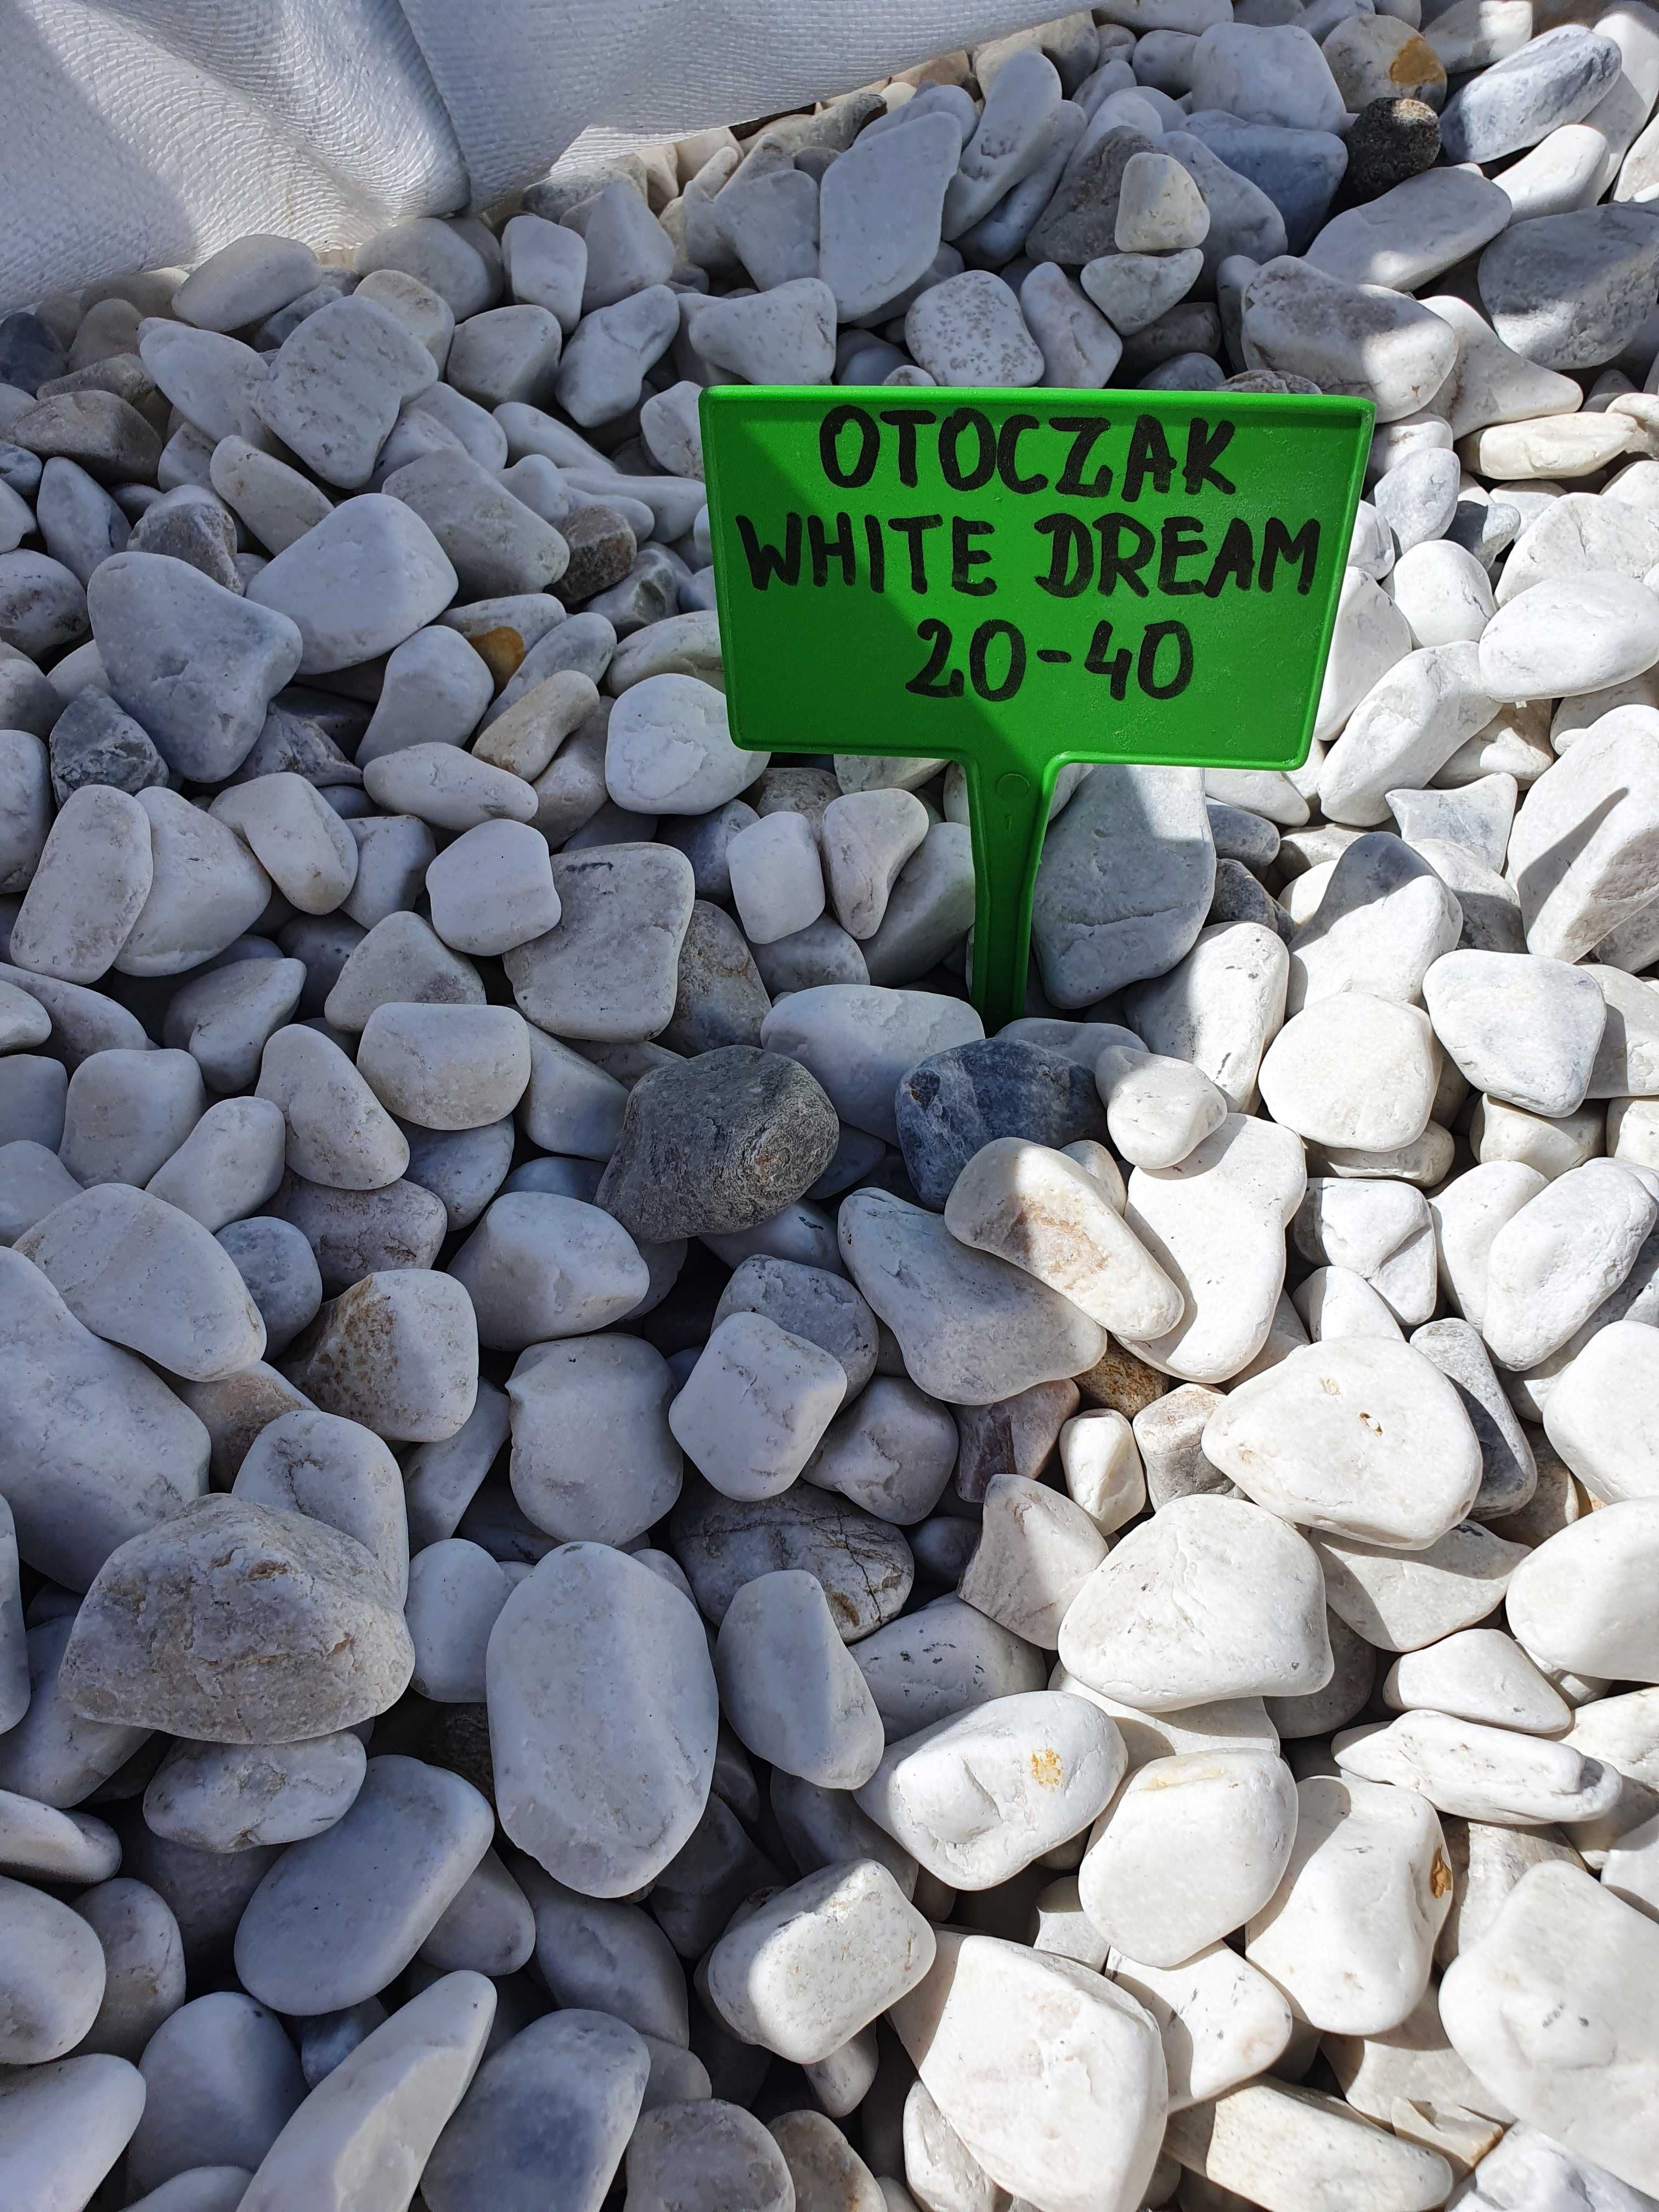 JUT grys otoczak Bianco Kamień ogrodowy ozdobn biały szary White Dream